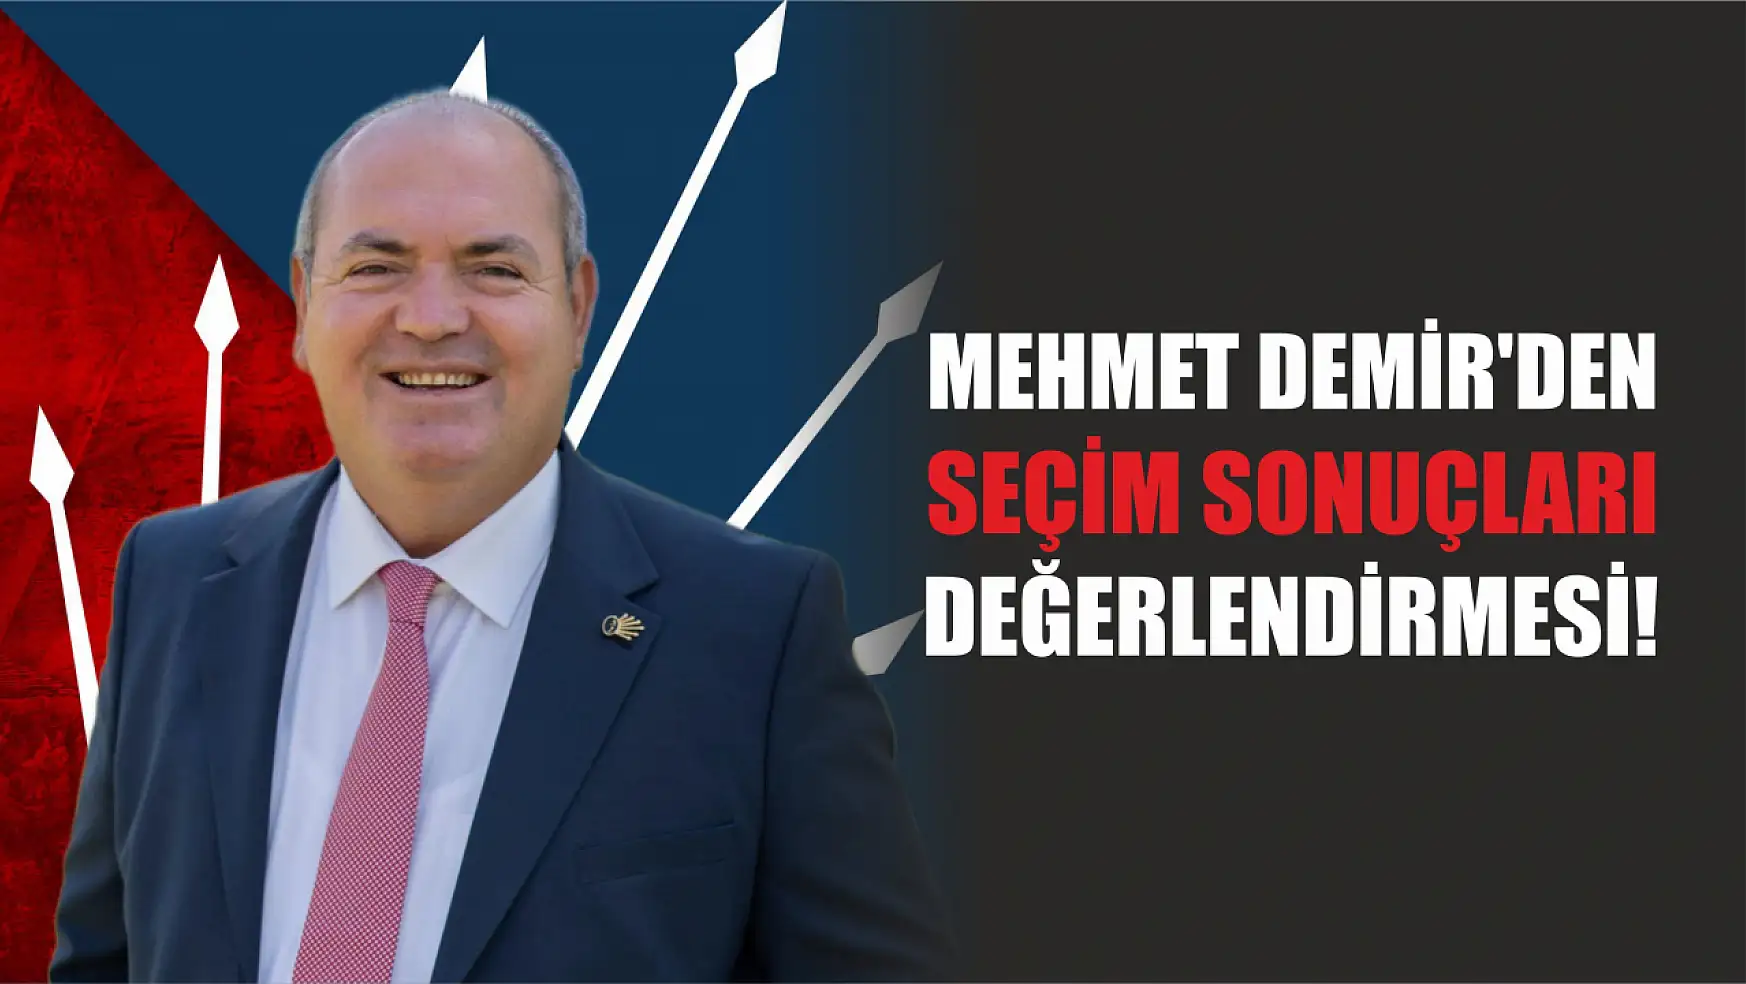 Mehmet Demir'den Seçim Sonuçları Değerlendirmesi!